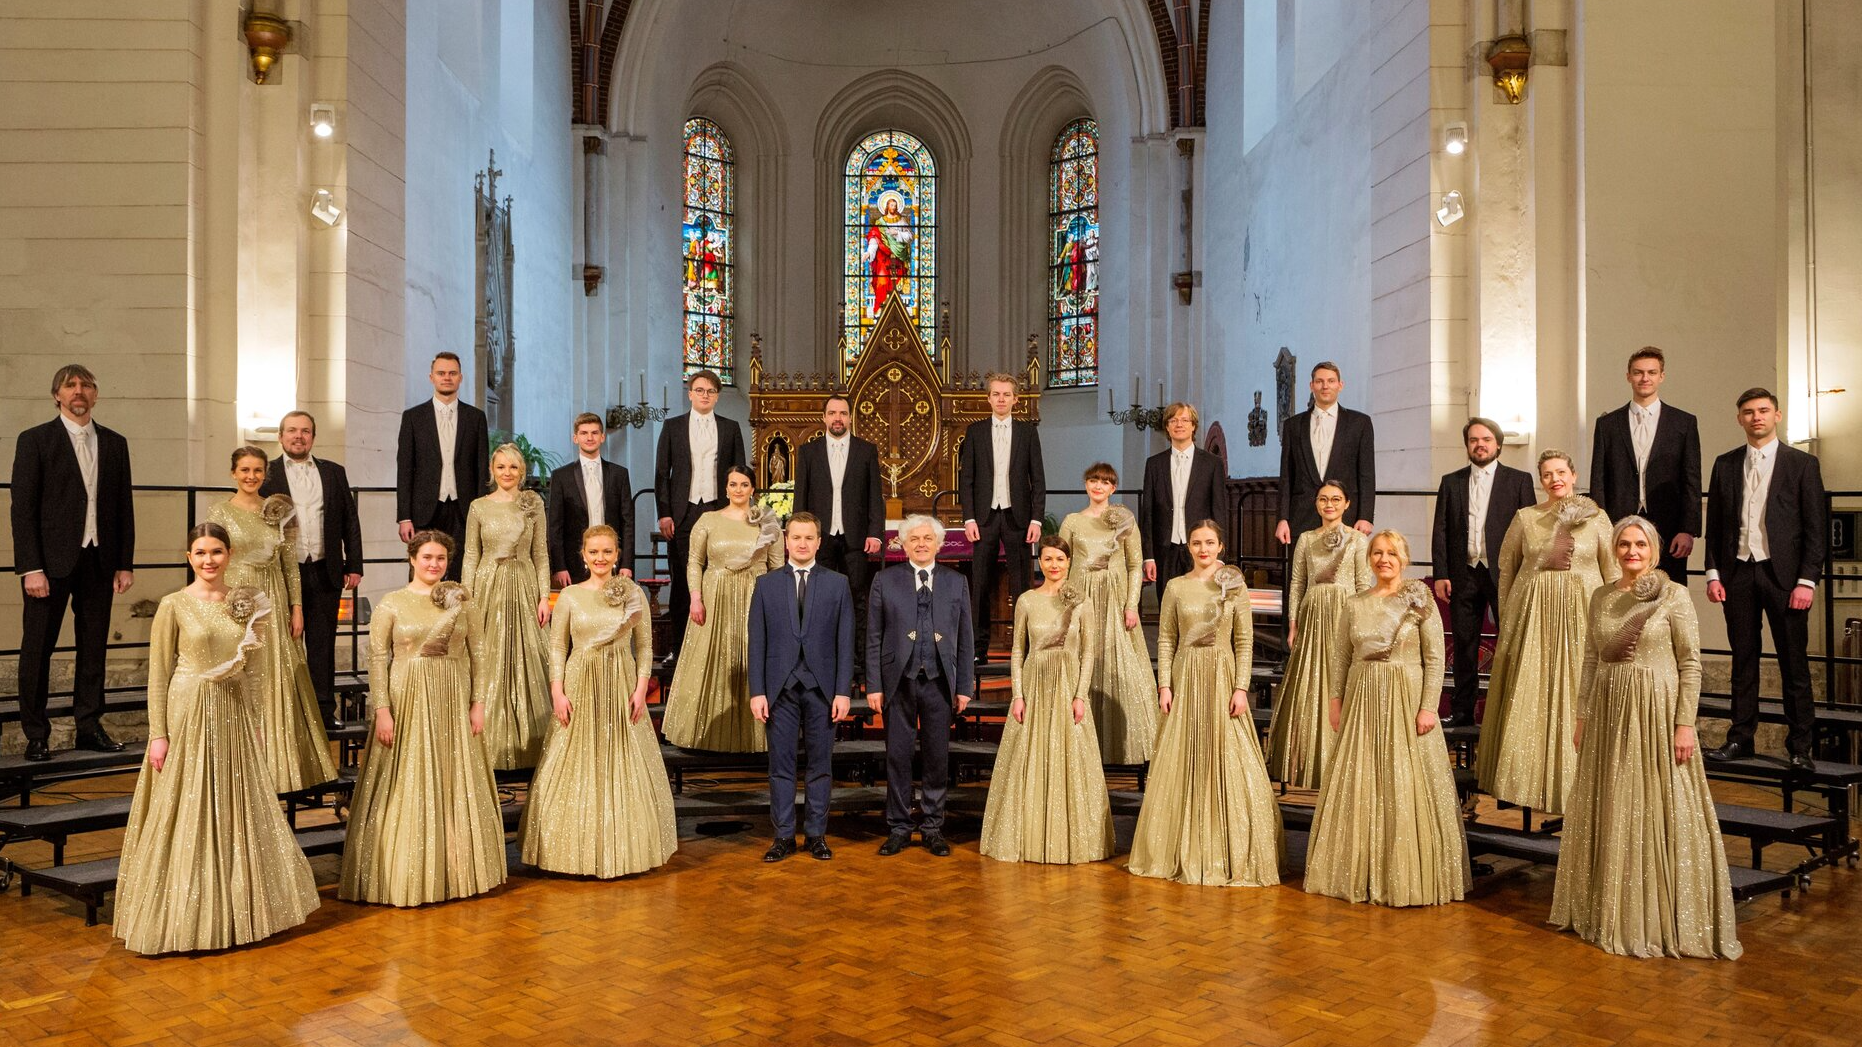 Klusajā sestdienā Rīgas Lutera baznīcā Torņakalnā izskanēs īpašs Baha Jāņa pasijas koncertatskaņojums